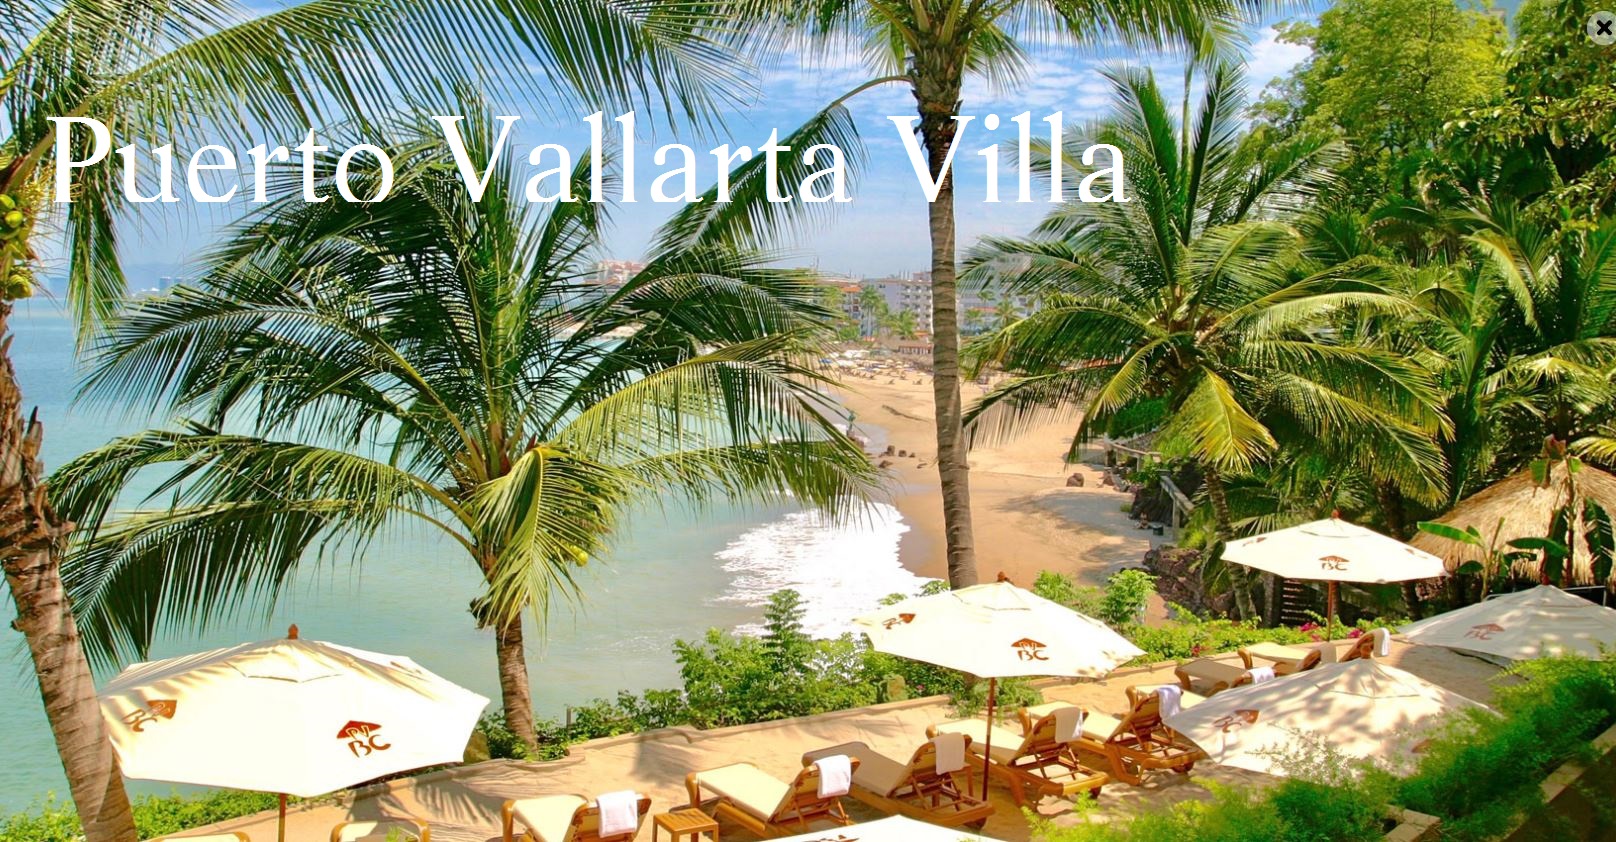 Puerto Vallarta Villa